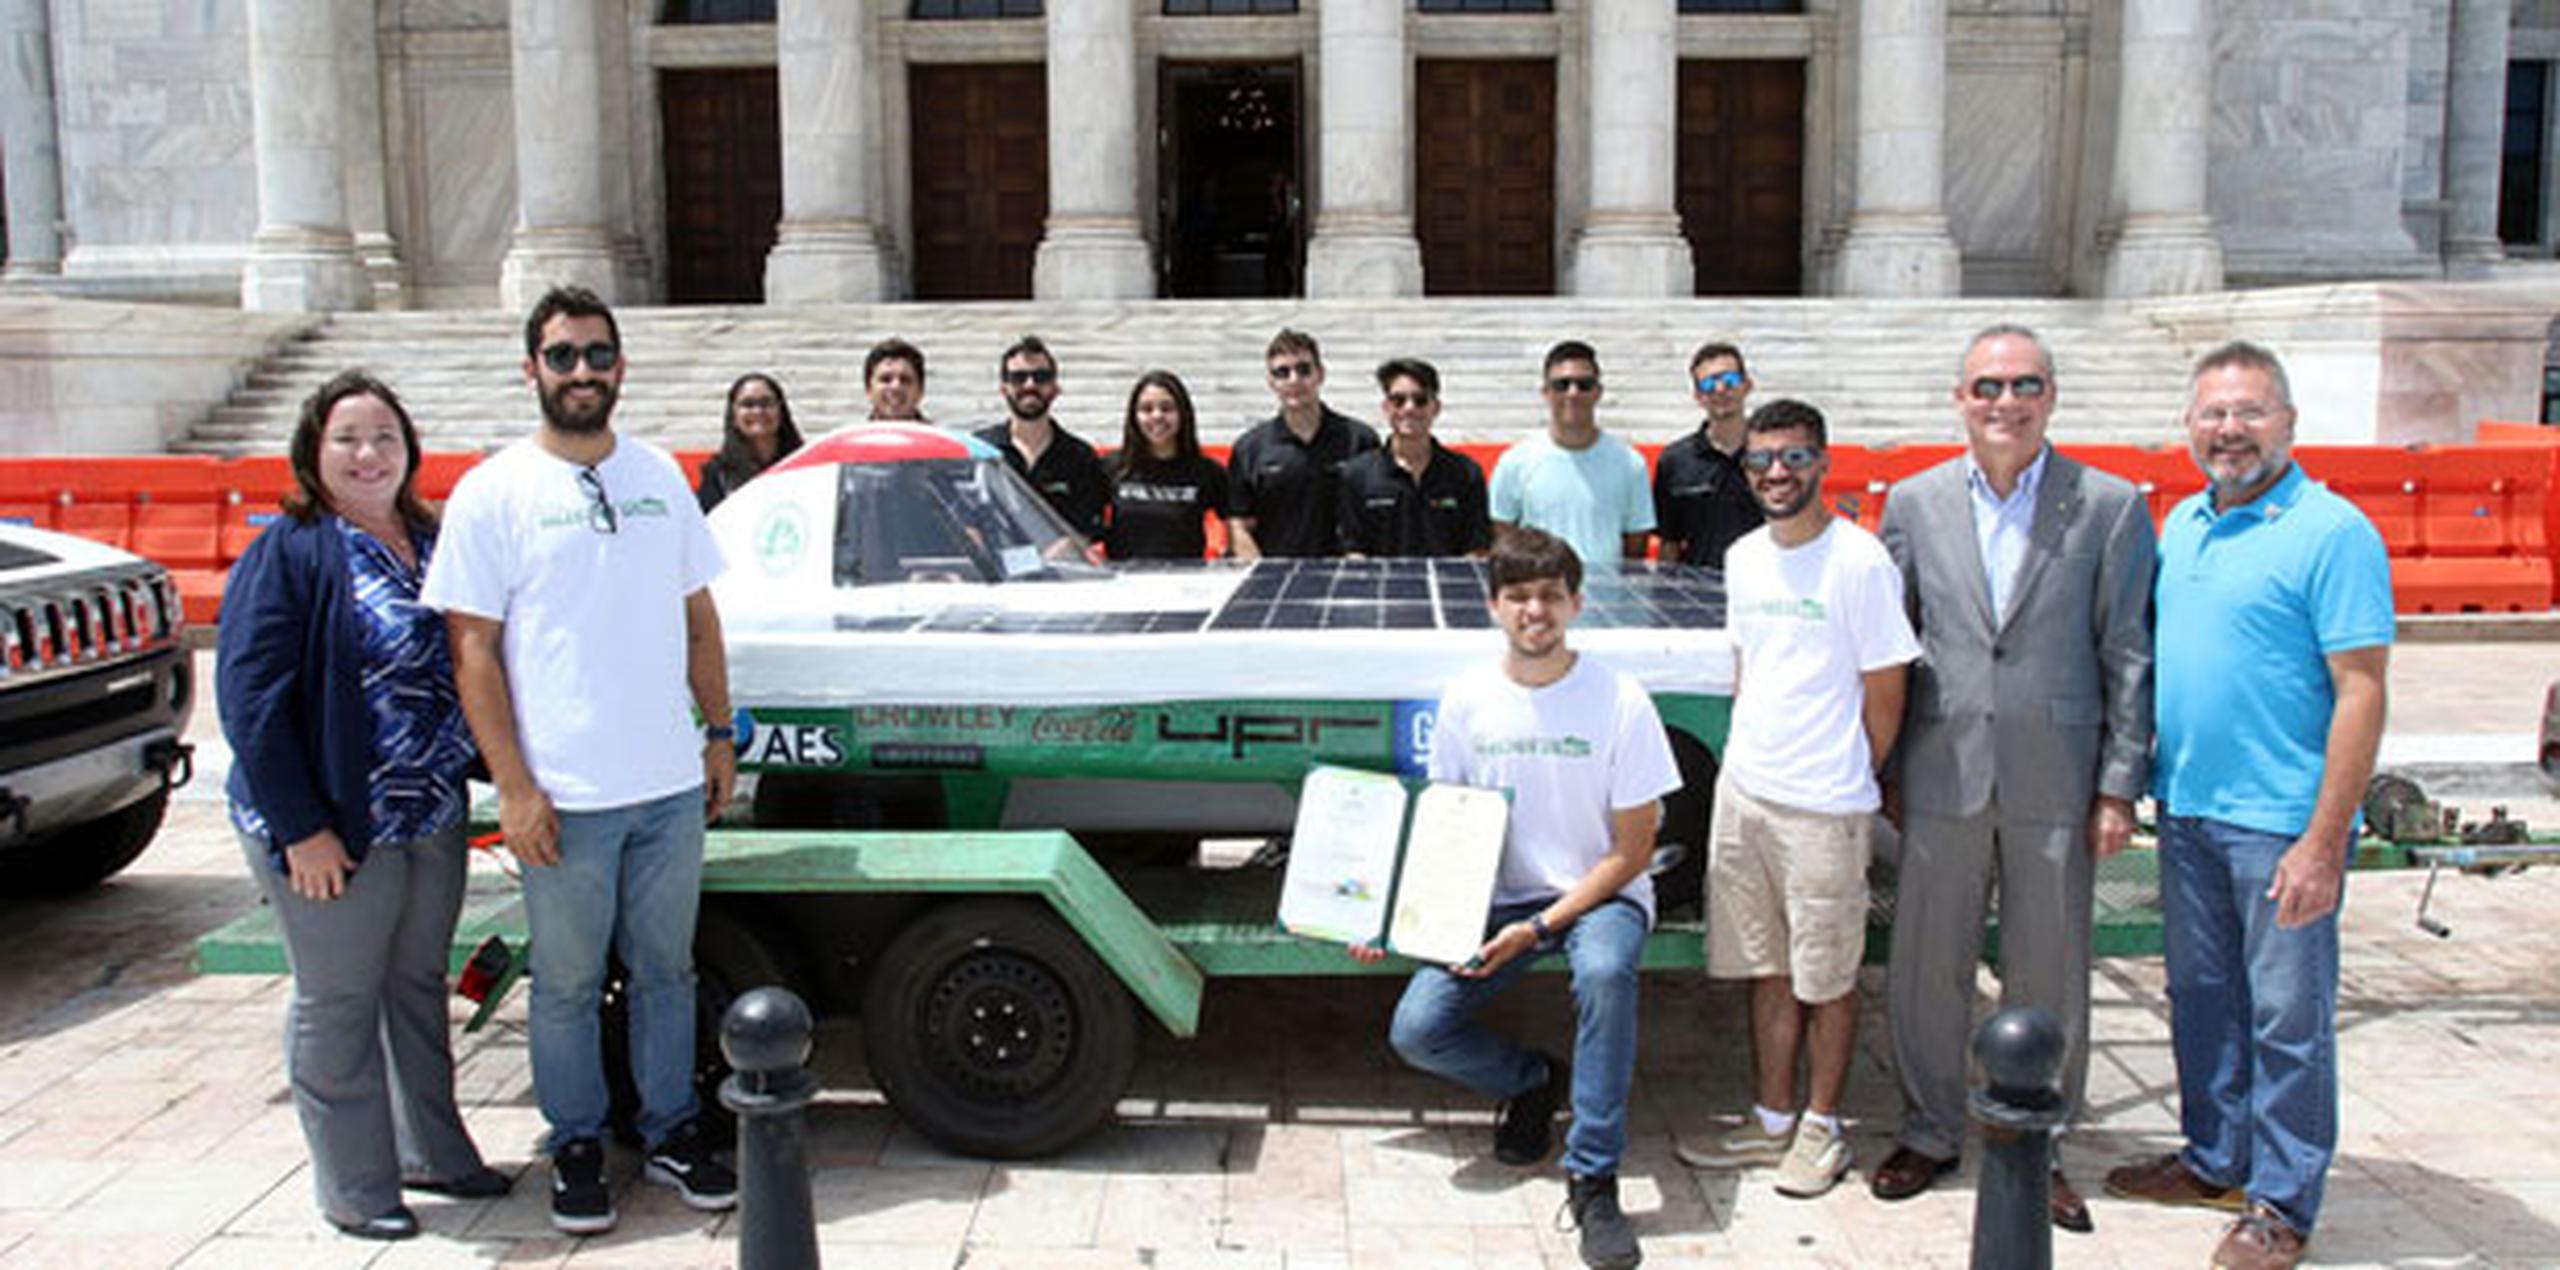 Mas Rodríguez, junto a los representantes José Aponte Hernández y Víctor Parés Otero, recibieron a los estudiantes diseñadores del carro solar, en la Palza de la Democracia. (Suministrada)